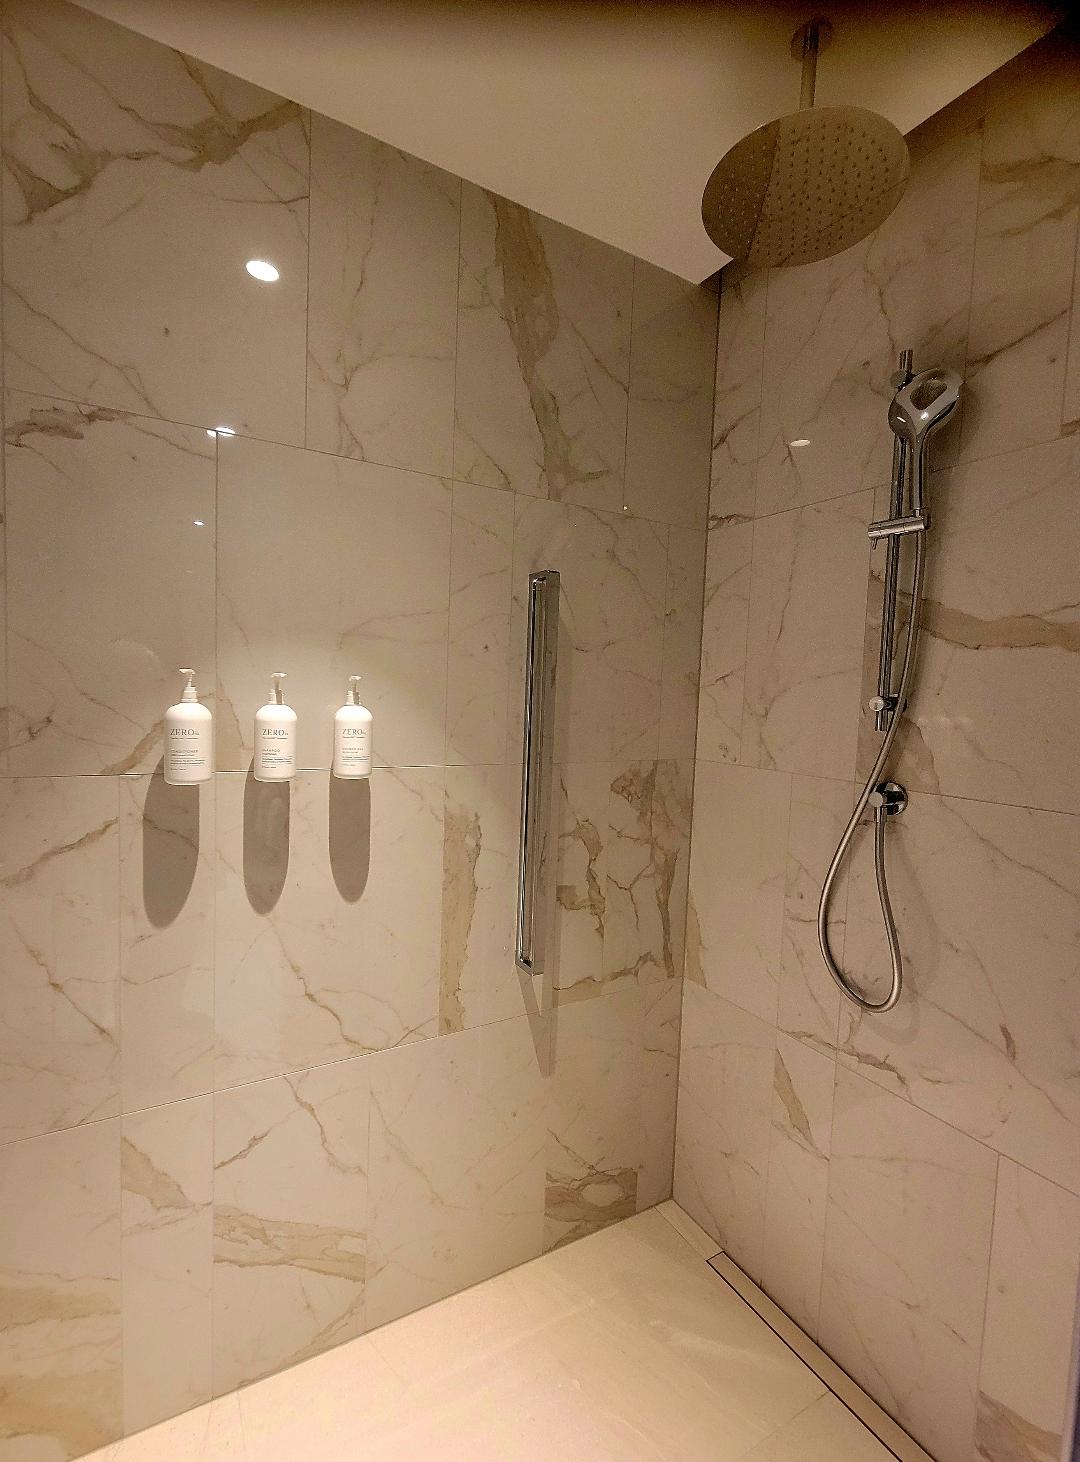 Iceland Parliament Hotel Shower